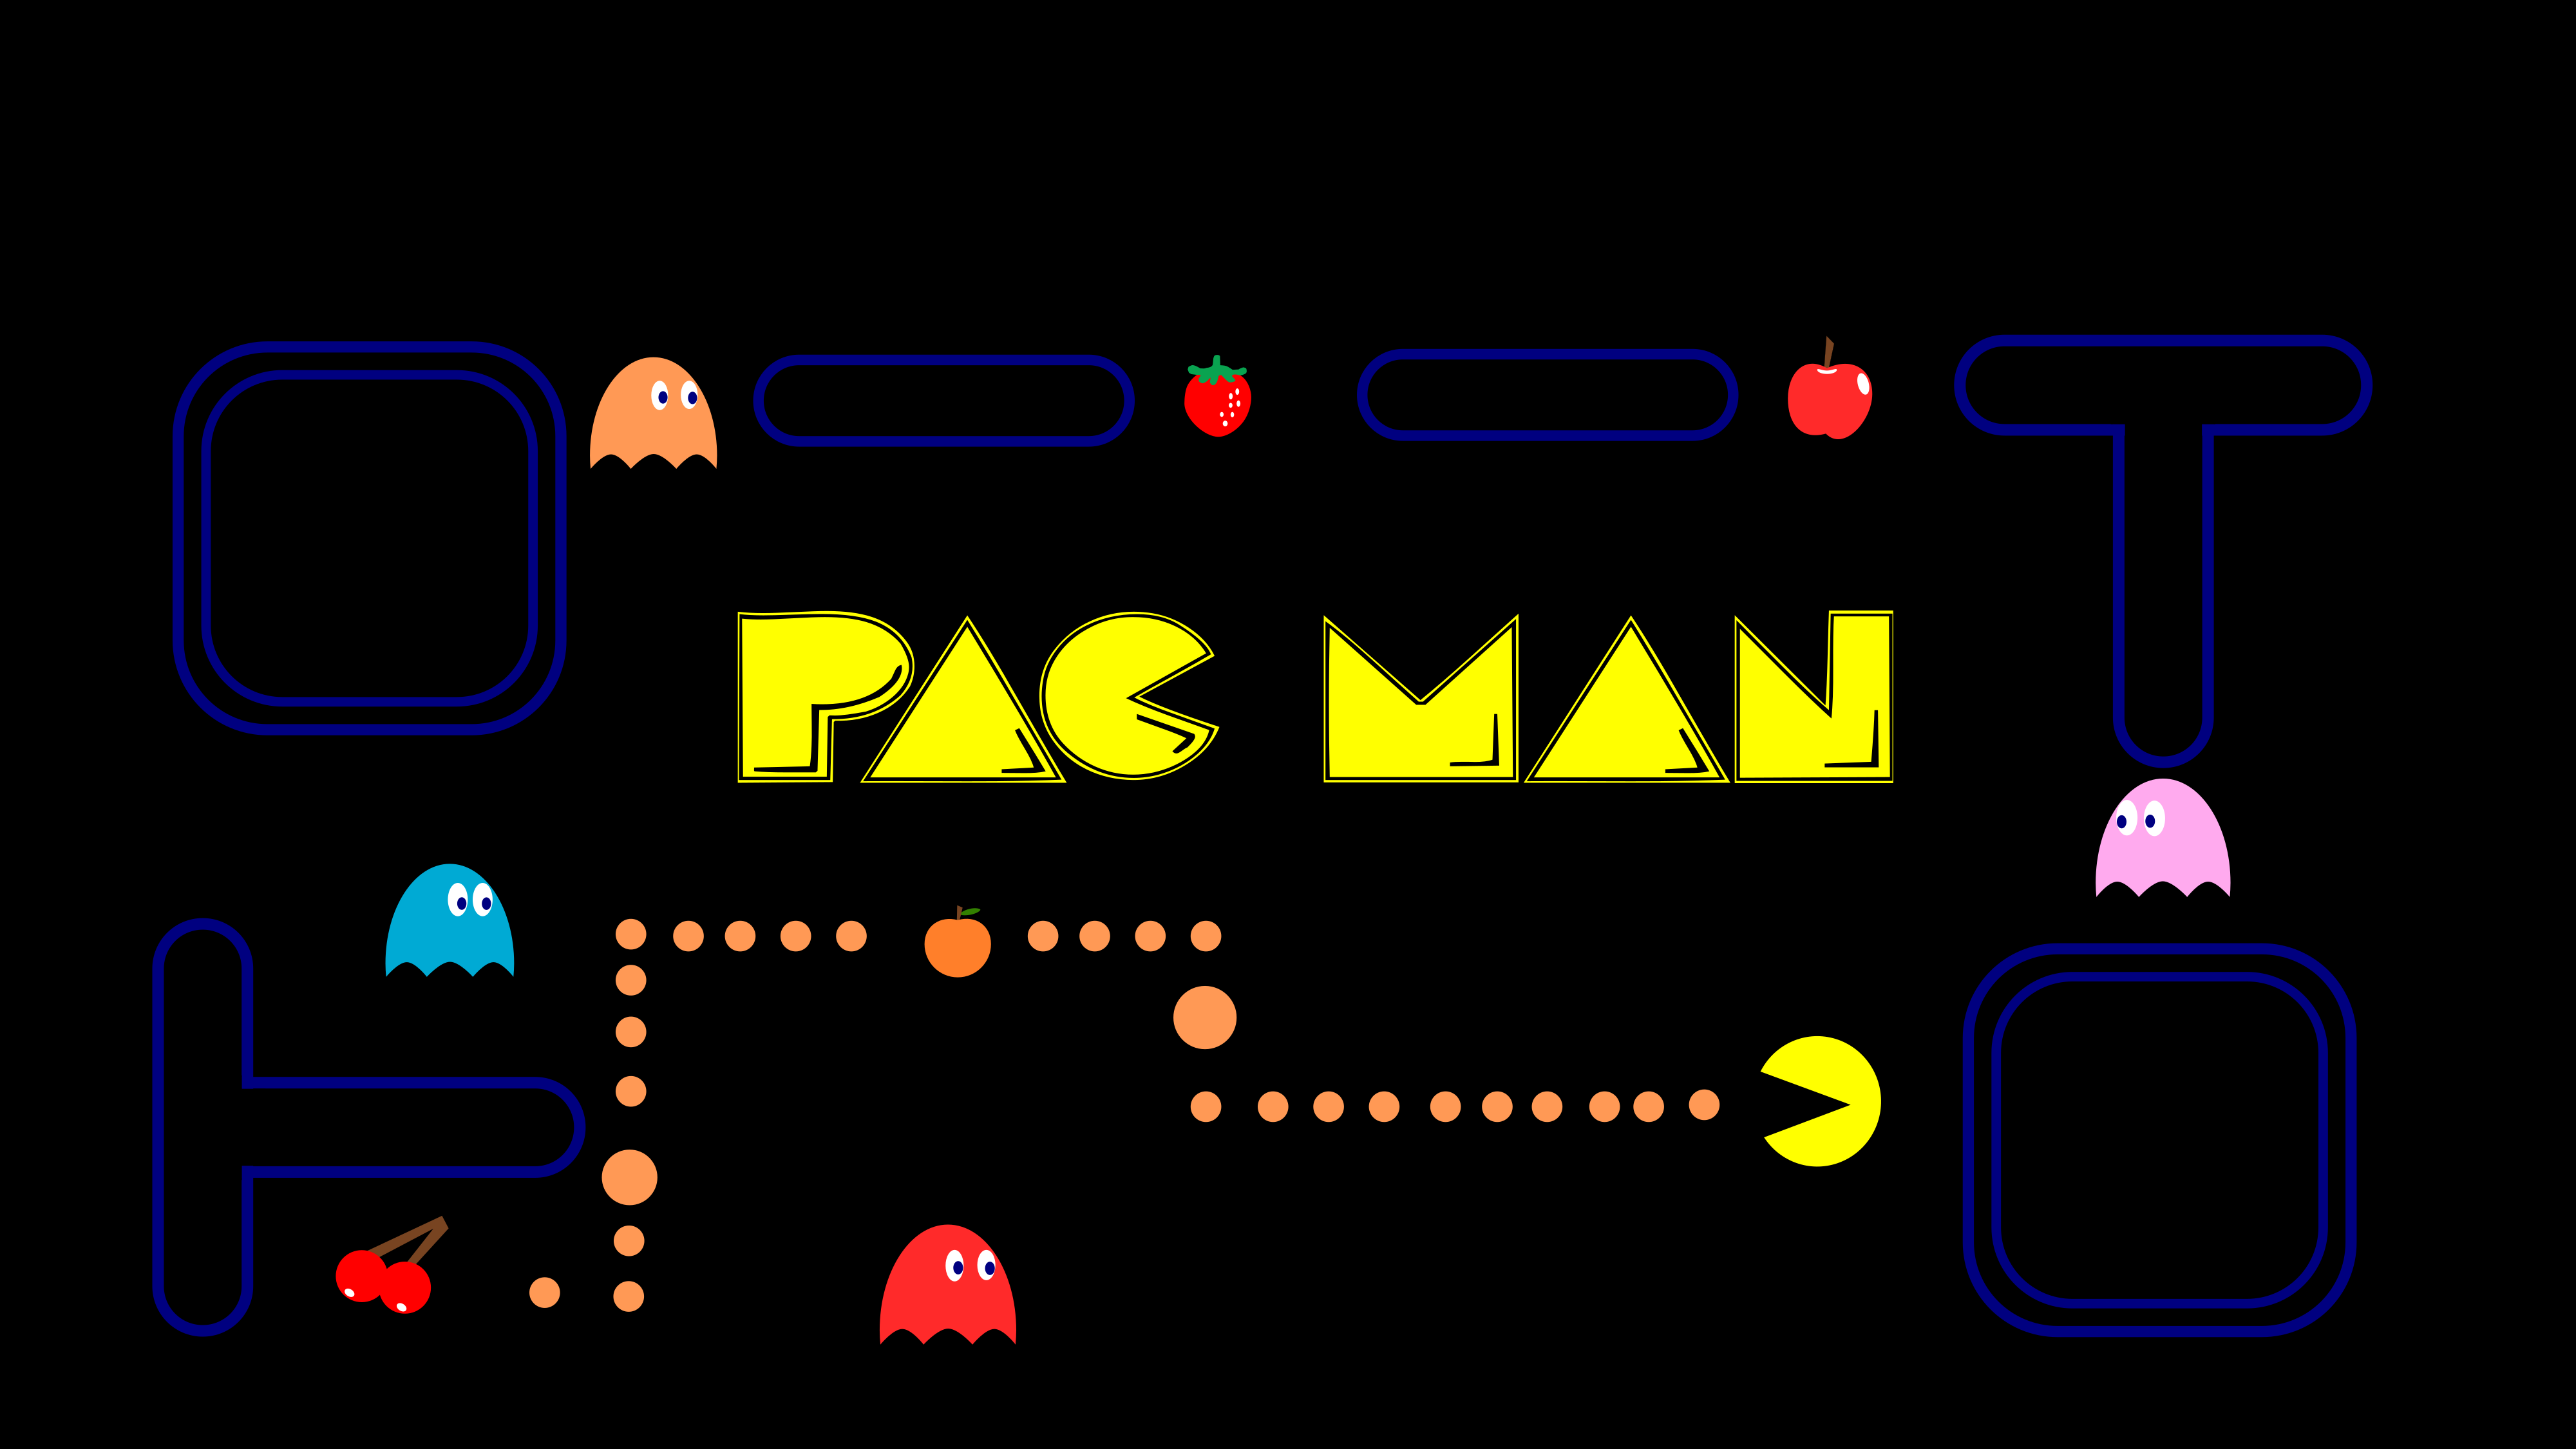 Inteligência artificial da Nvidia cria uma versão jogável do Pac-Man